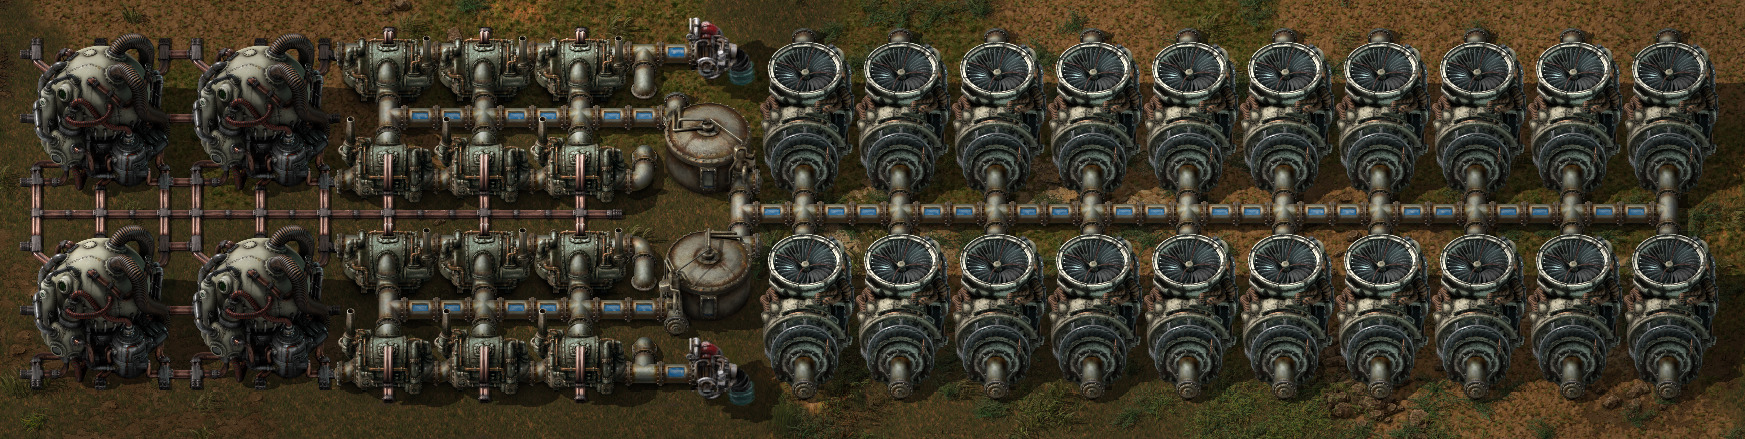 easy-reactor-mockup.jpg